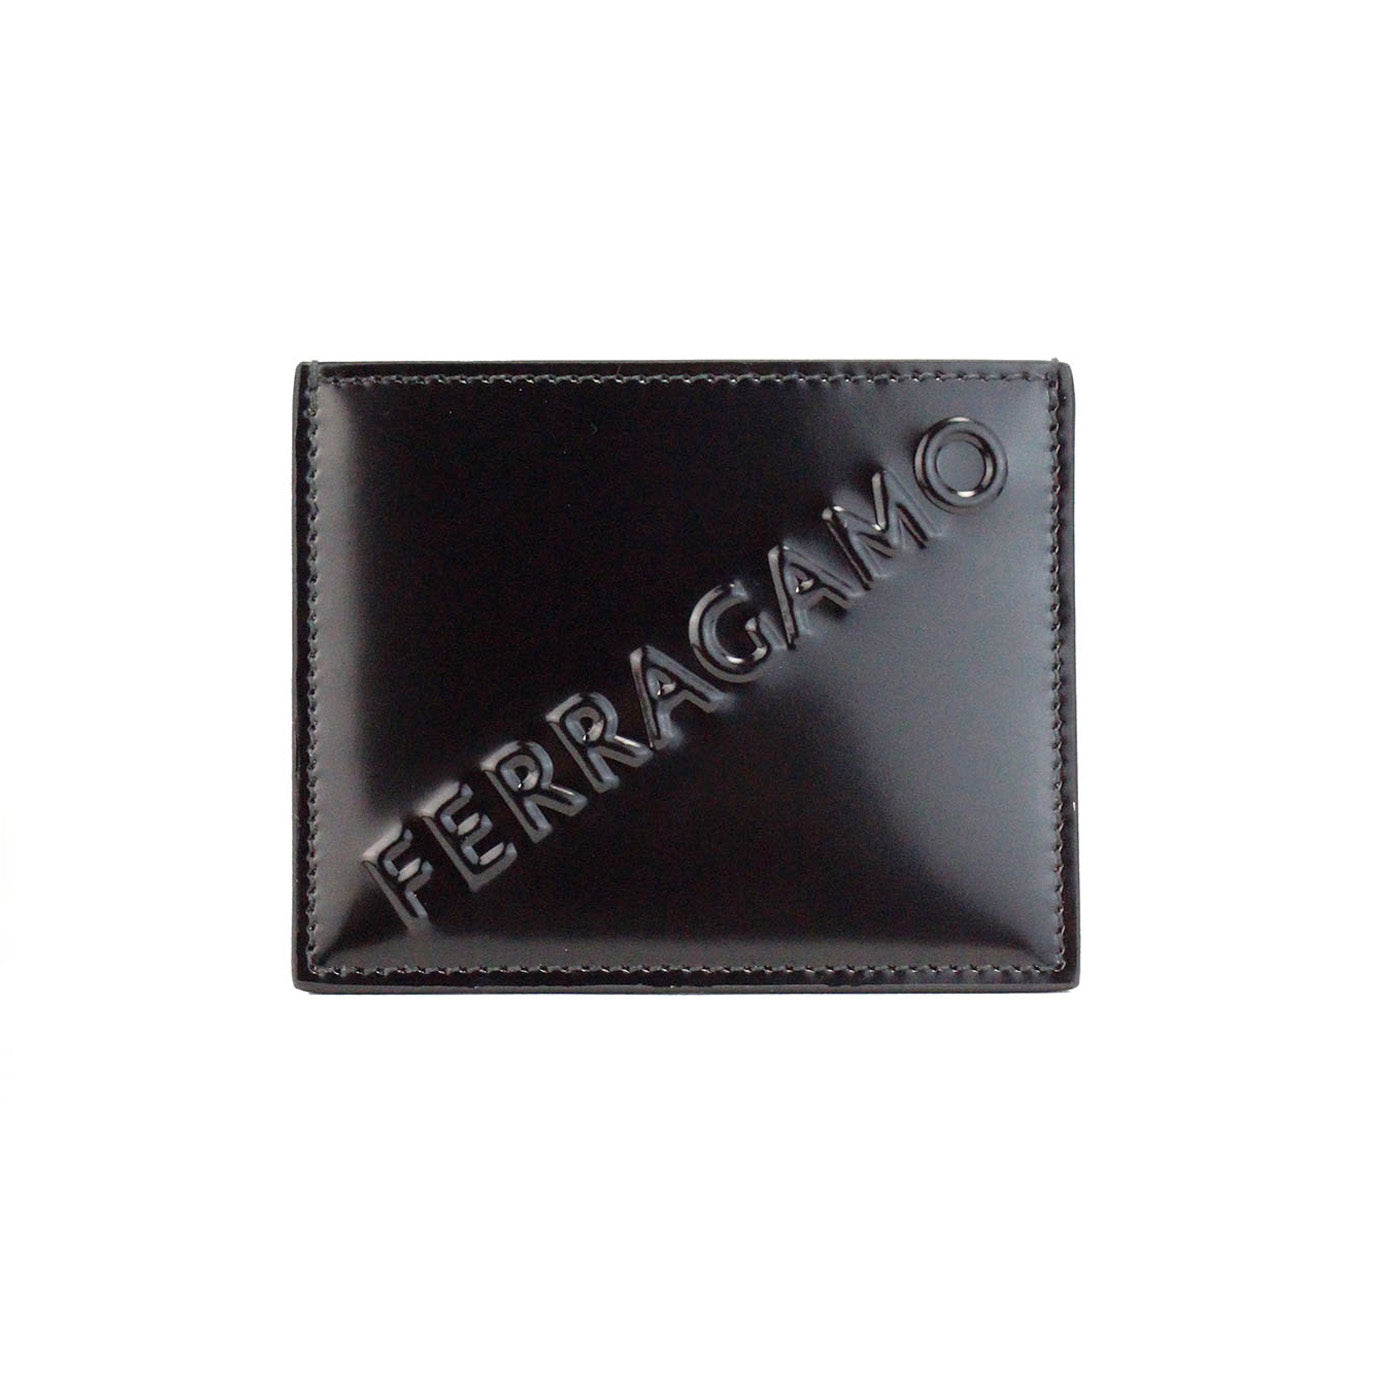 Salvatore Ferragamo Slim Black Embossed Patent Leather Card Case